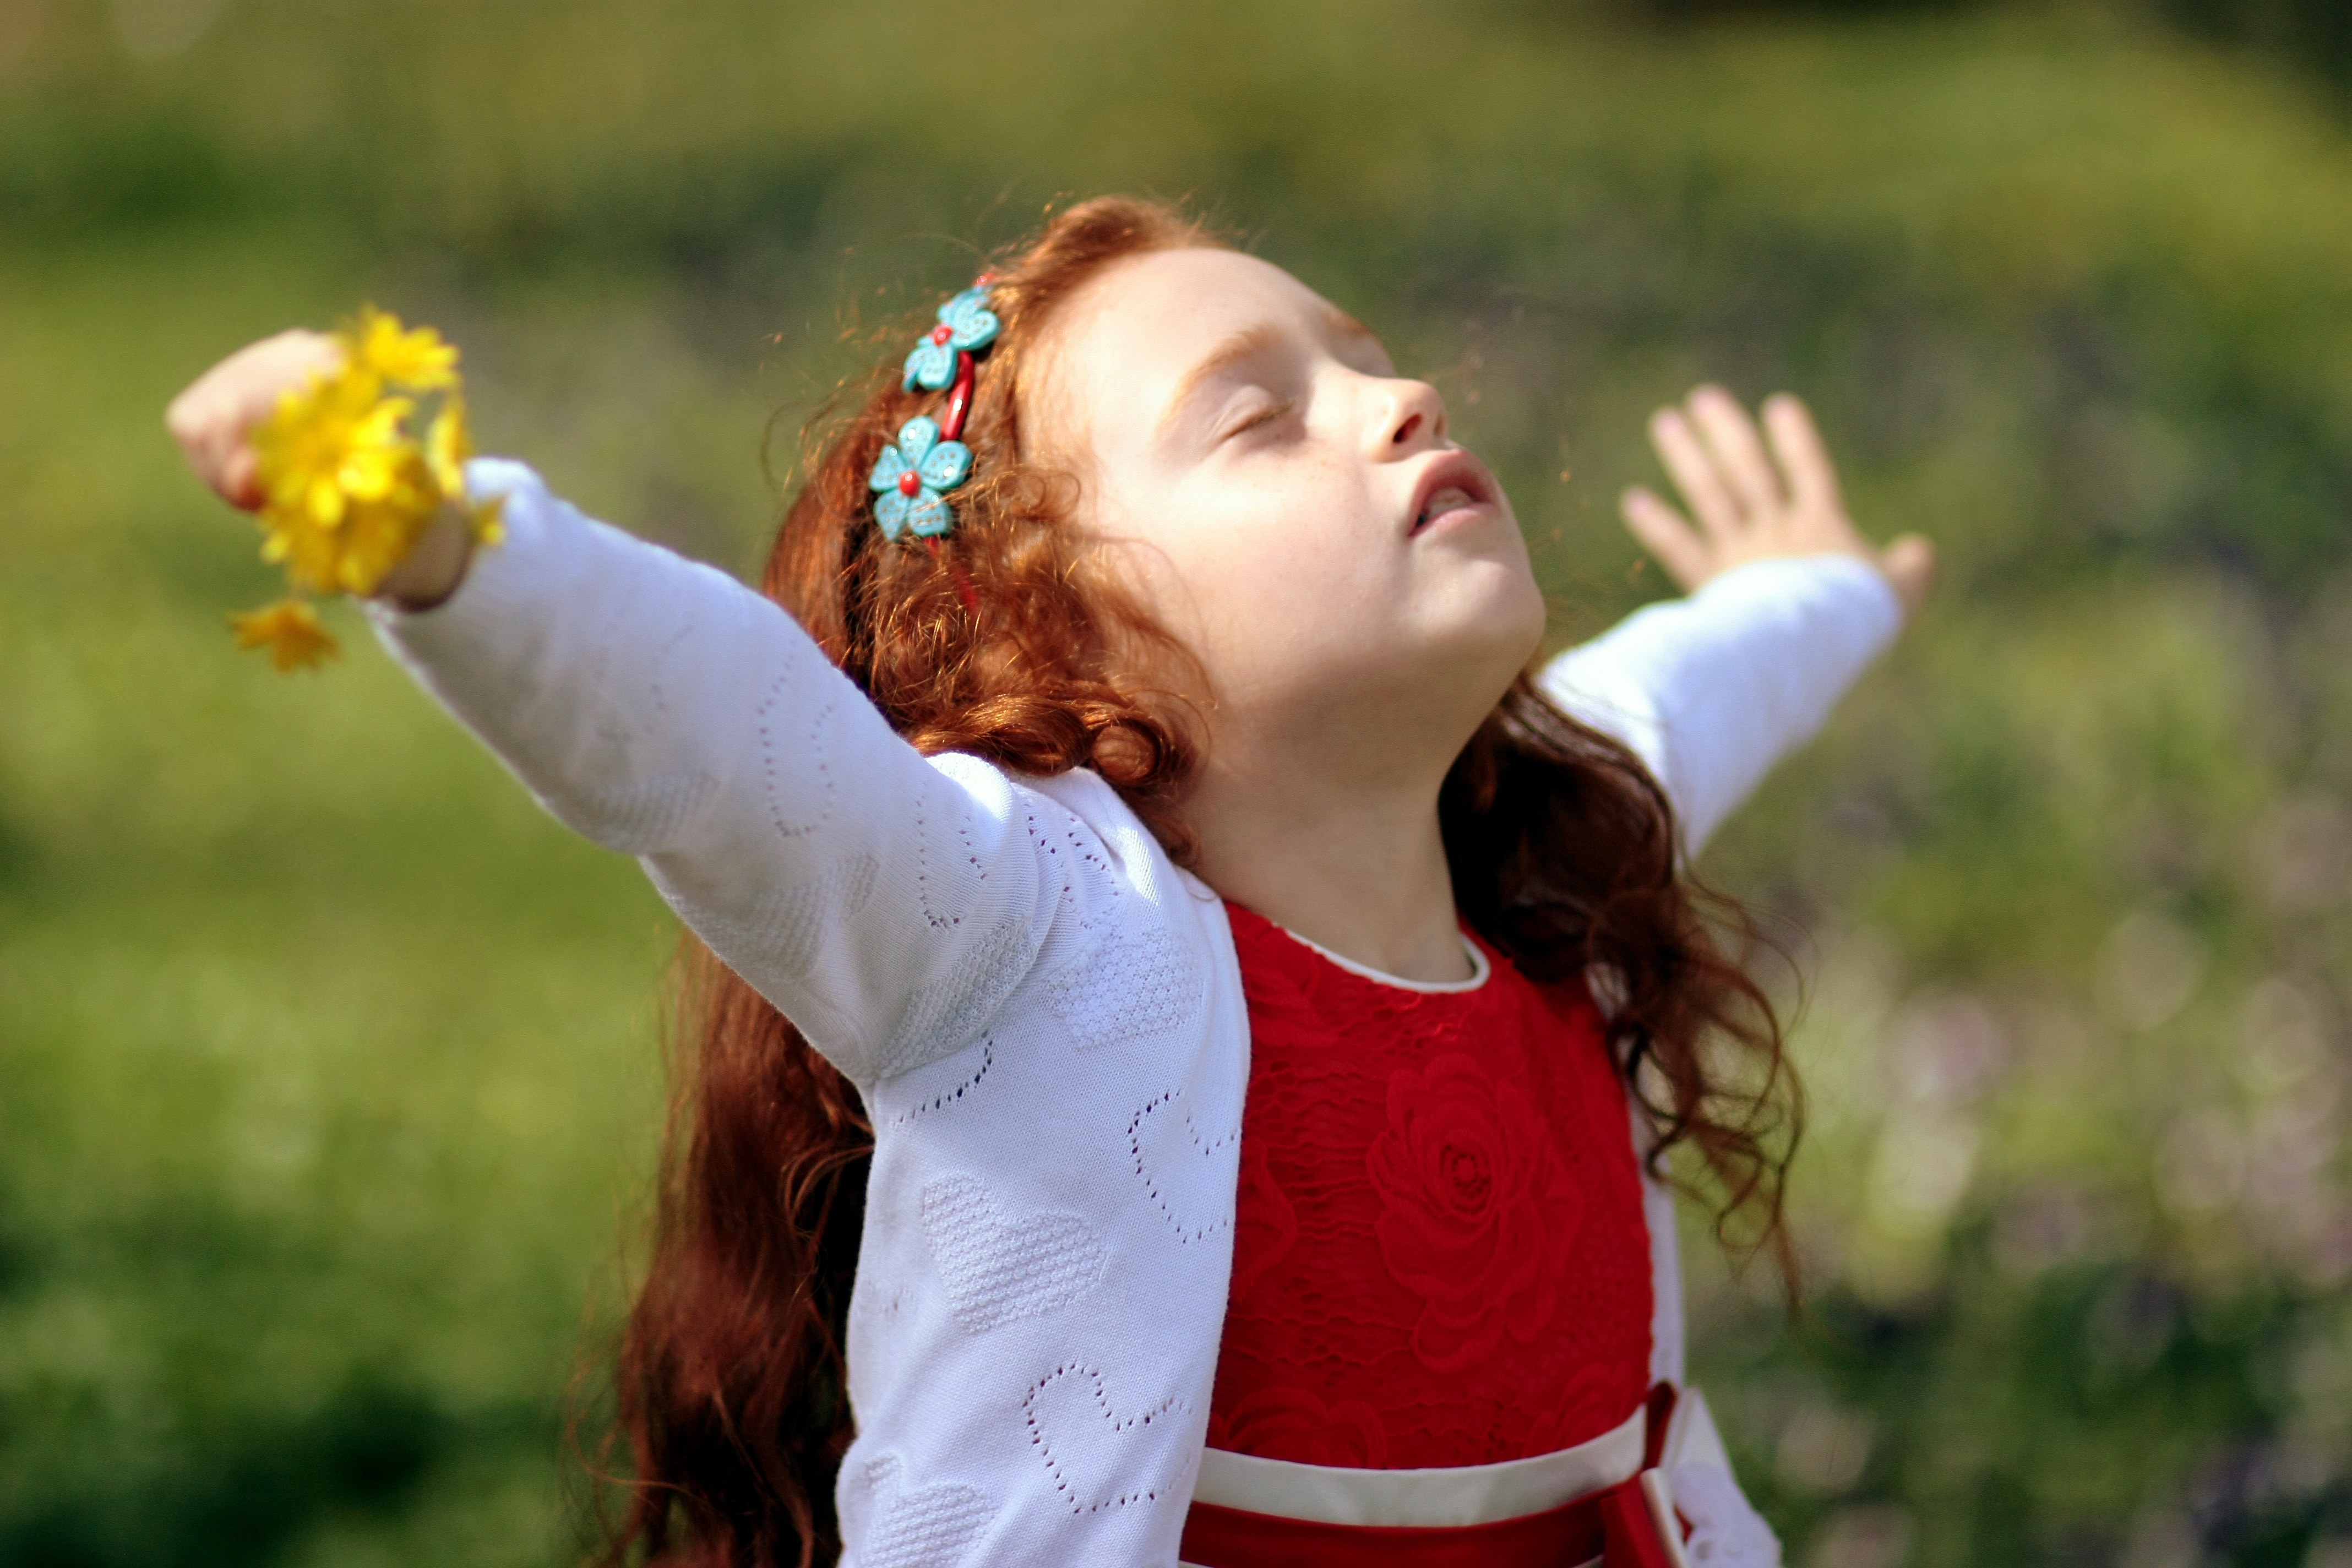 Freedom's children. Принцесса природы девочка. Маленькая принцесса на природе. Фото на аватарку для женщины с детьми. Freedom девочка.